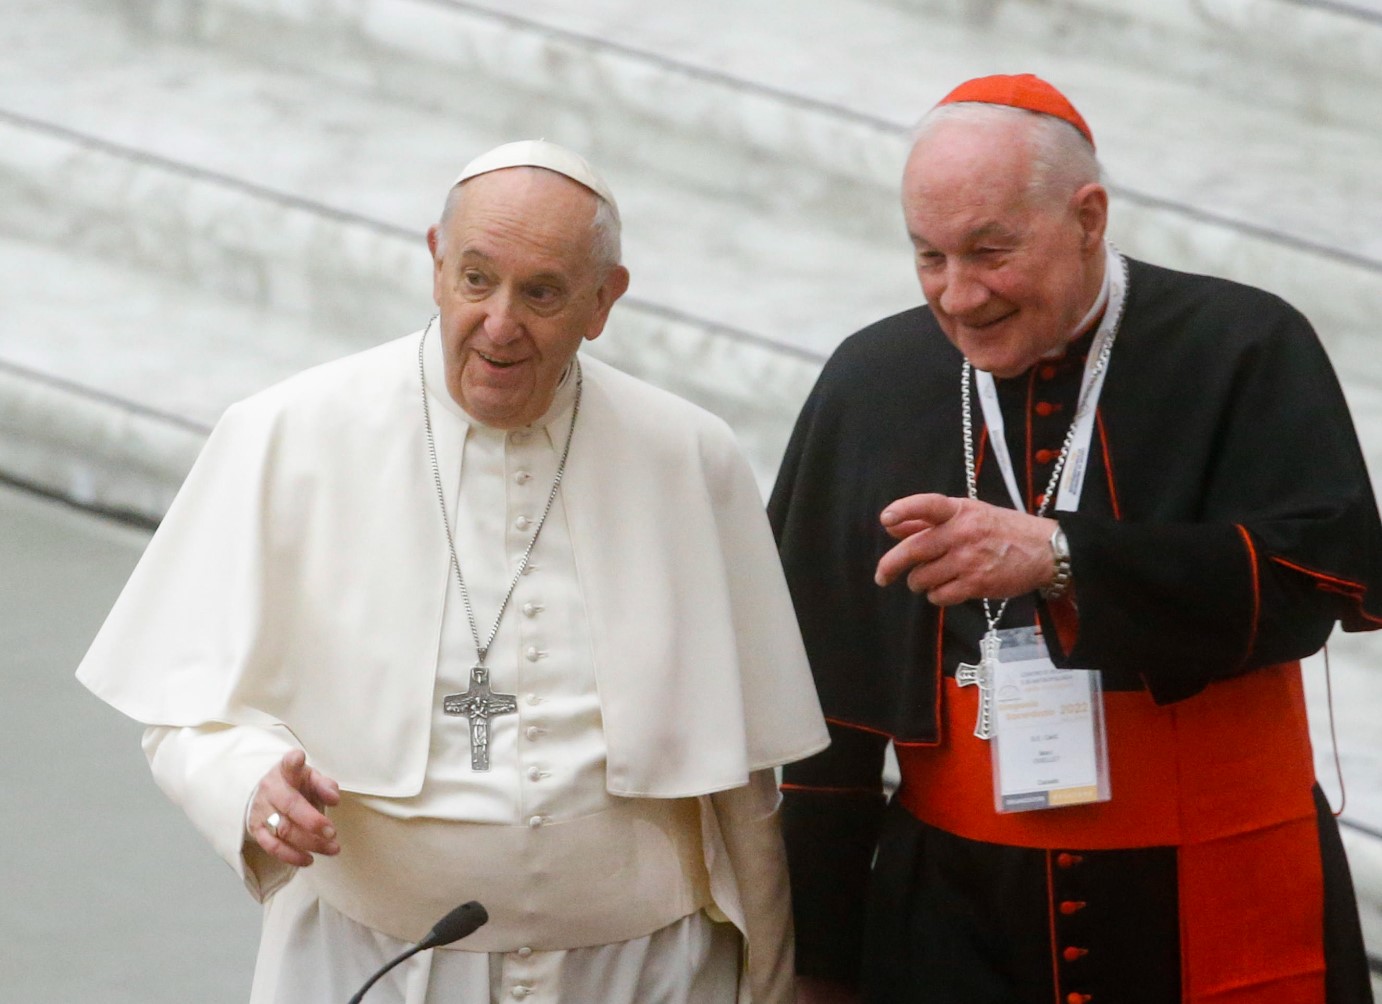 Канадски кардинал отхвърля твърденията за сексуално посегателство